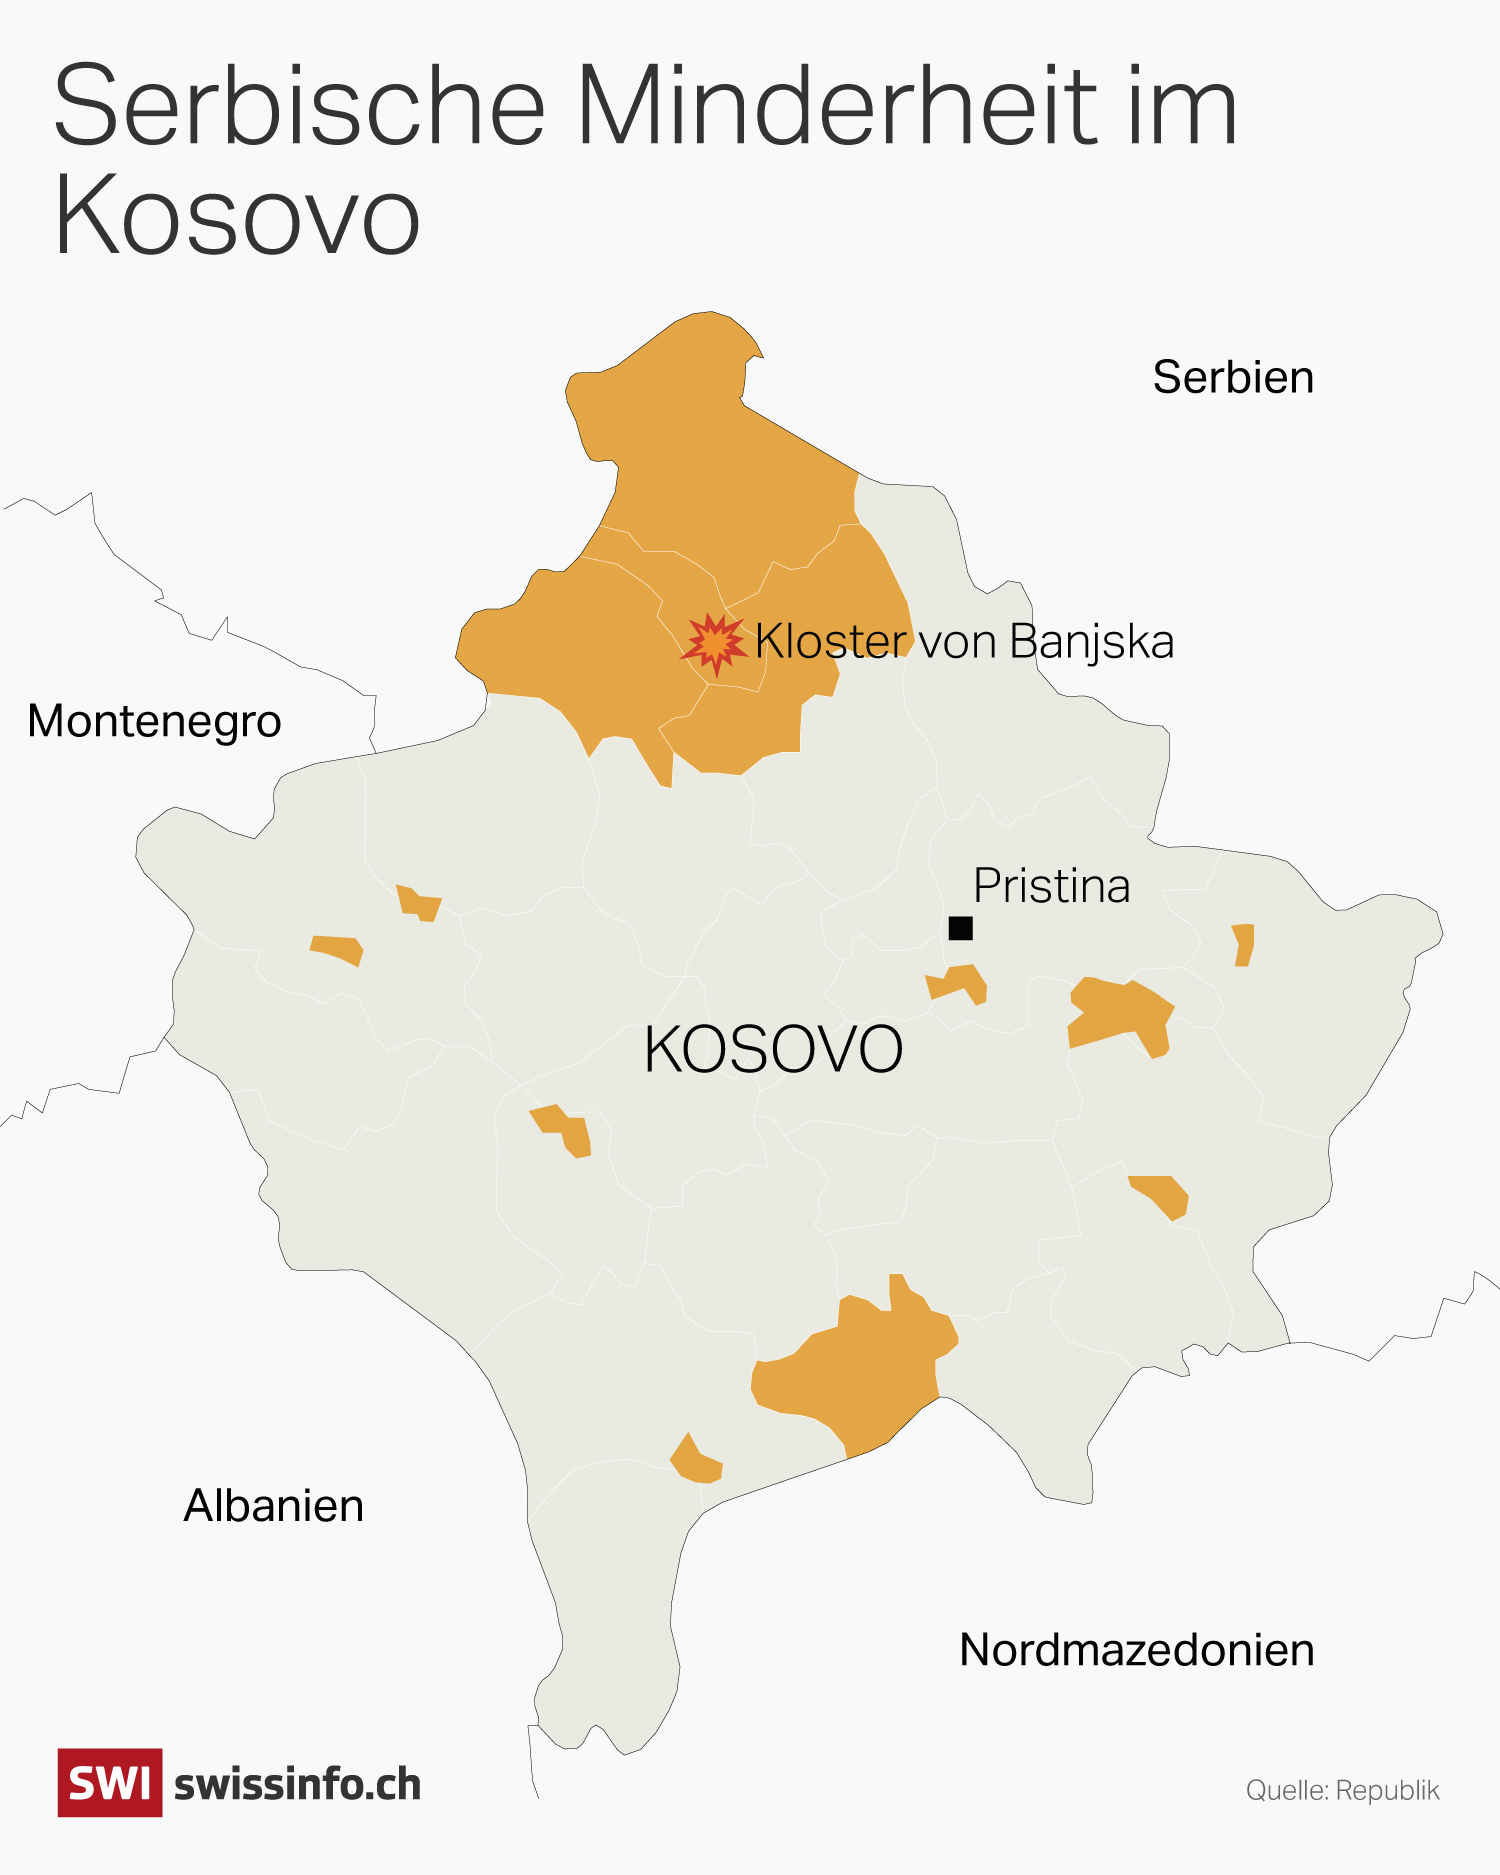 Eine Karte von Kosovo, auf der die serbischen Mehrheitsgebiete markiert sind.